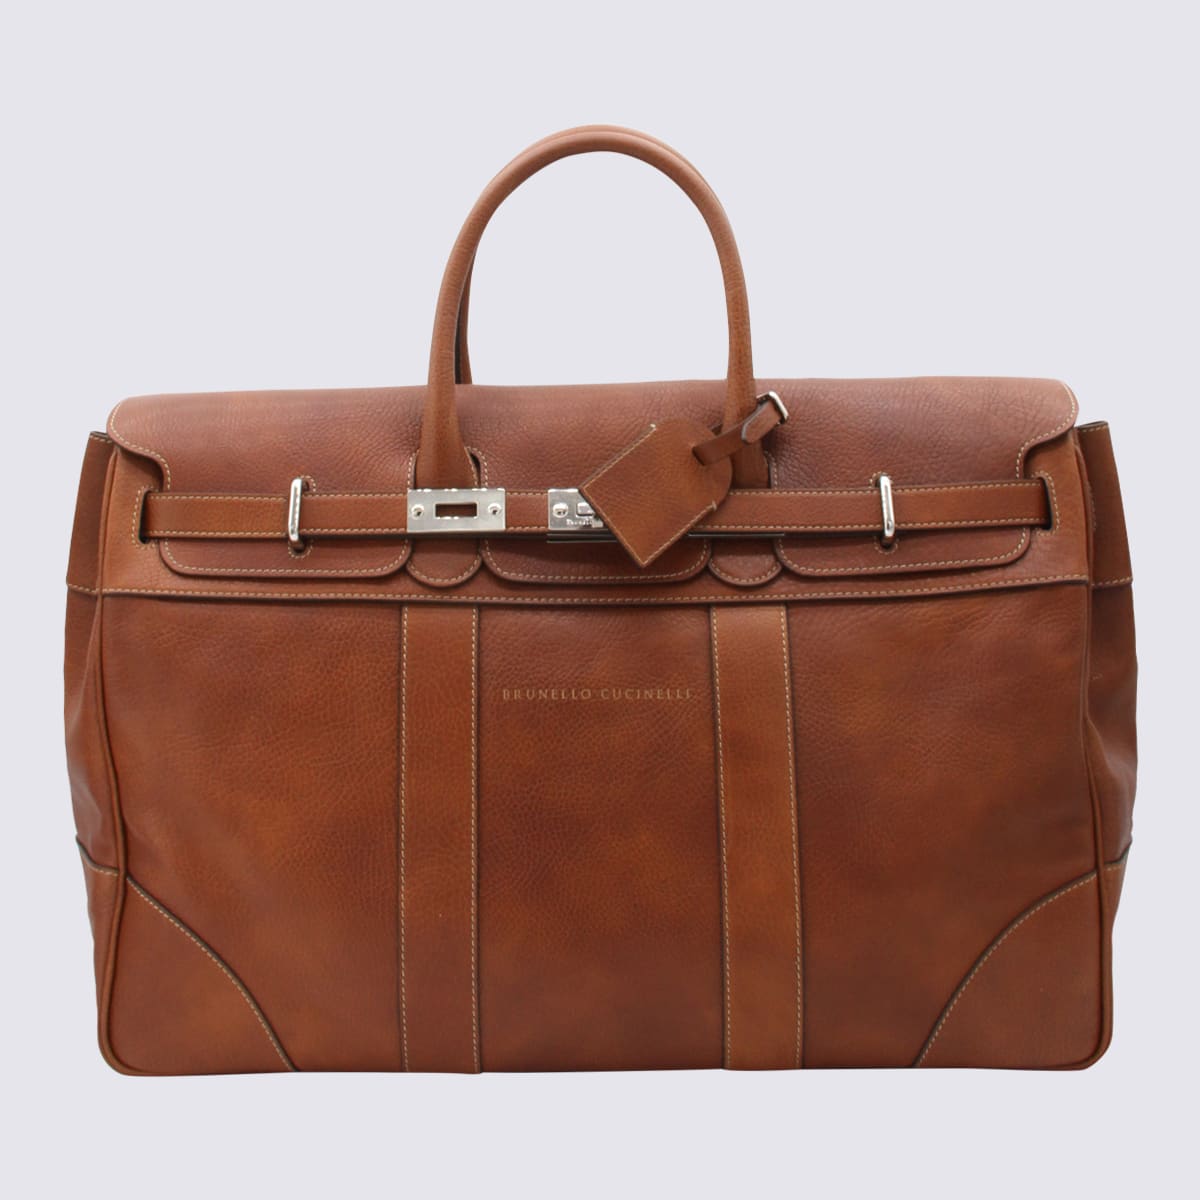 Brown Leather Weekender Country Bag